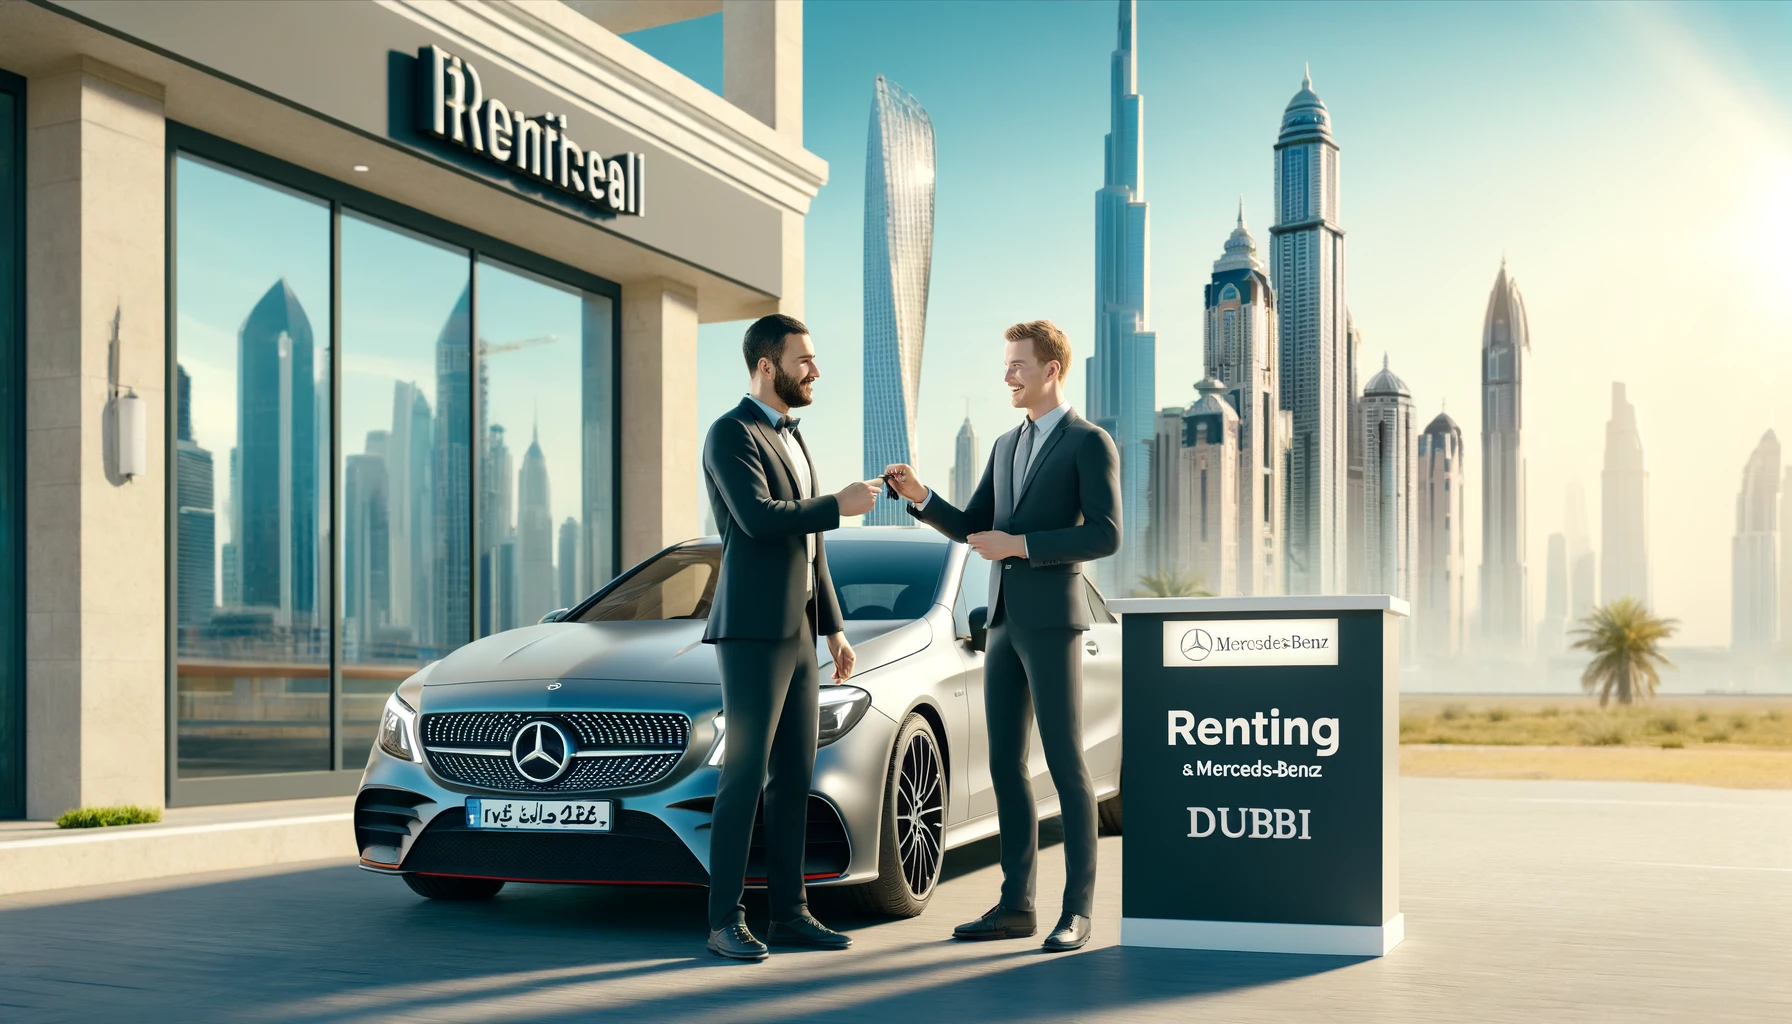 Renting a Mercedes Dubai